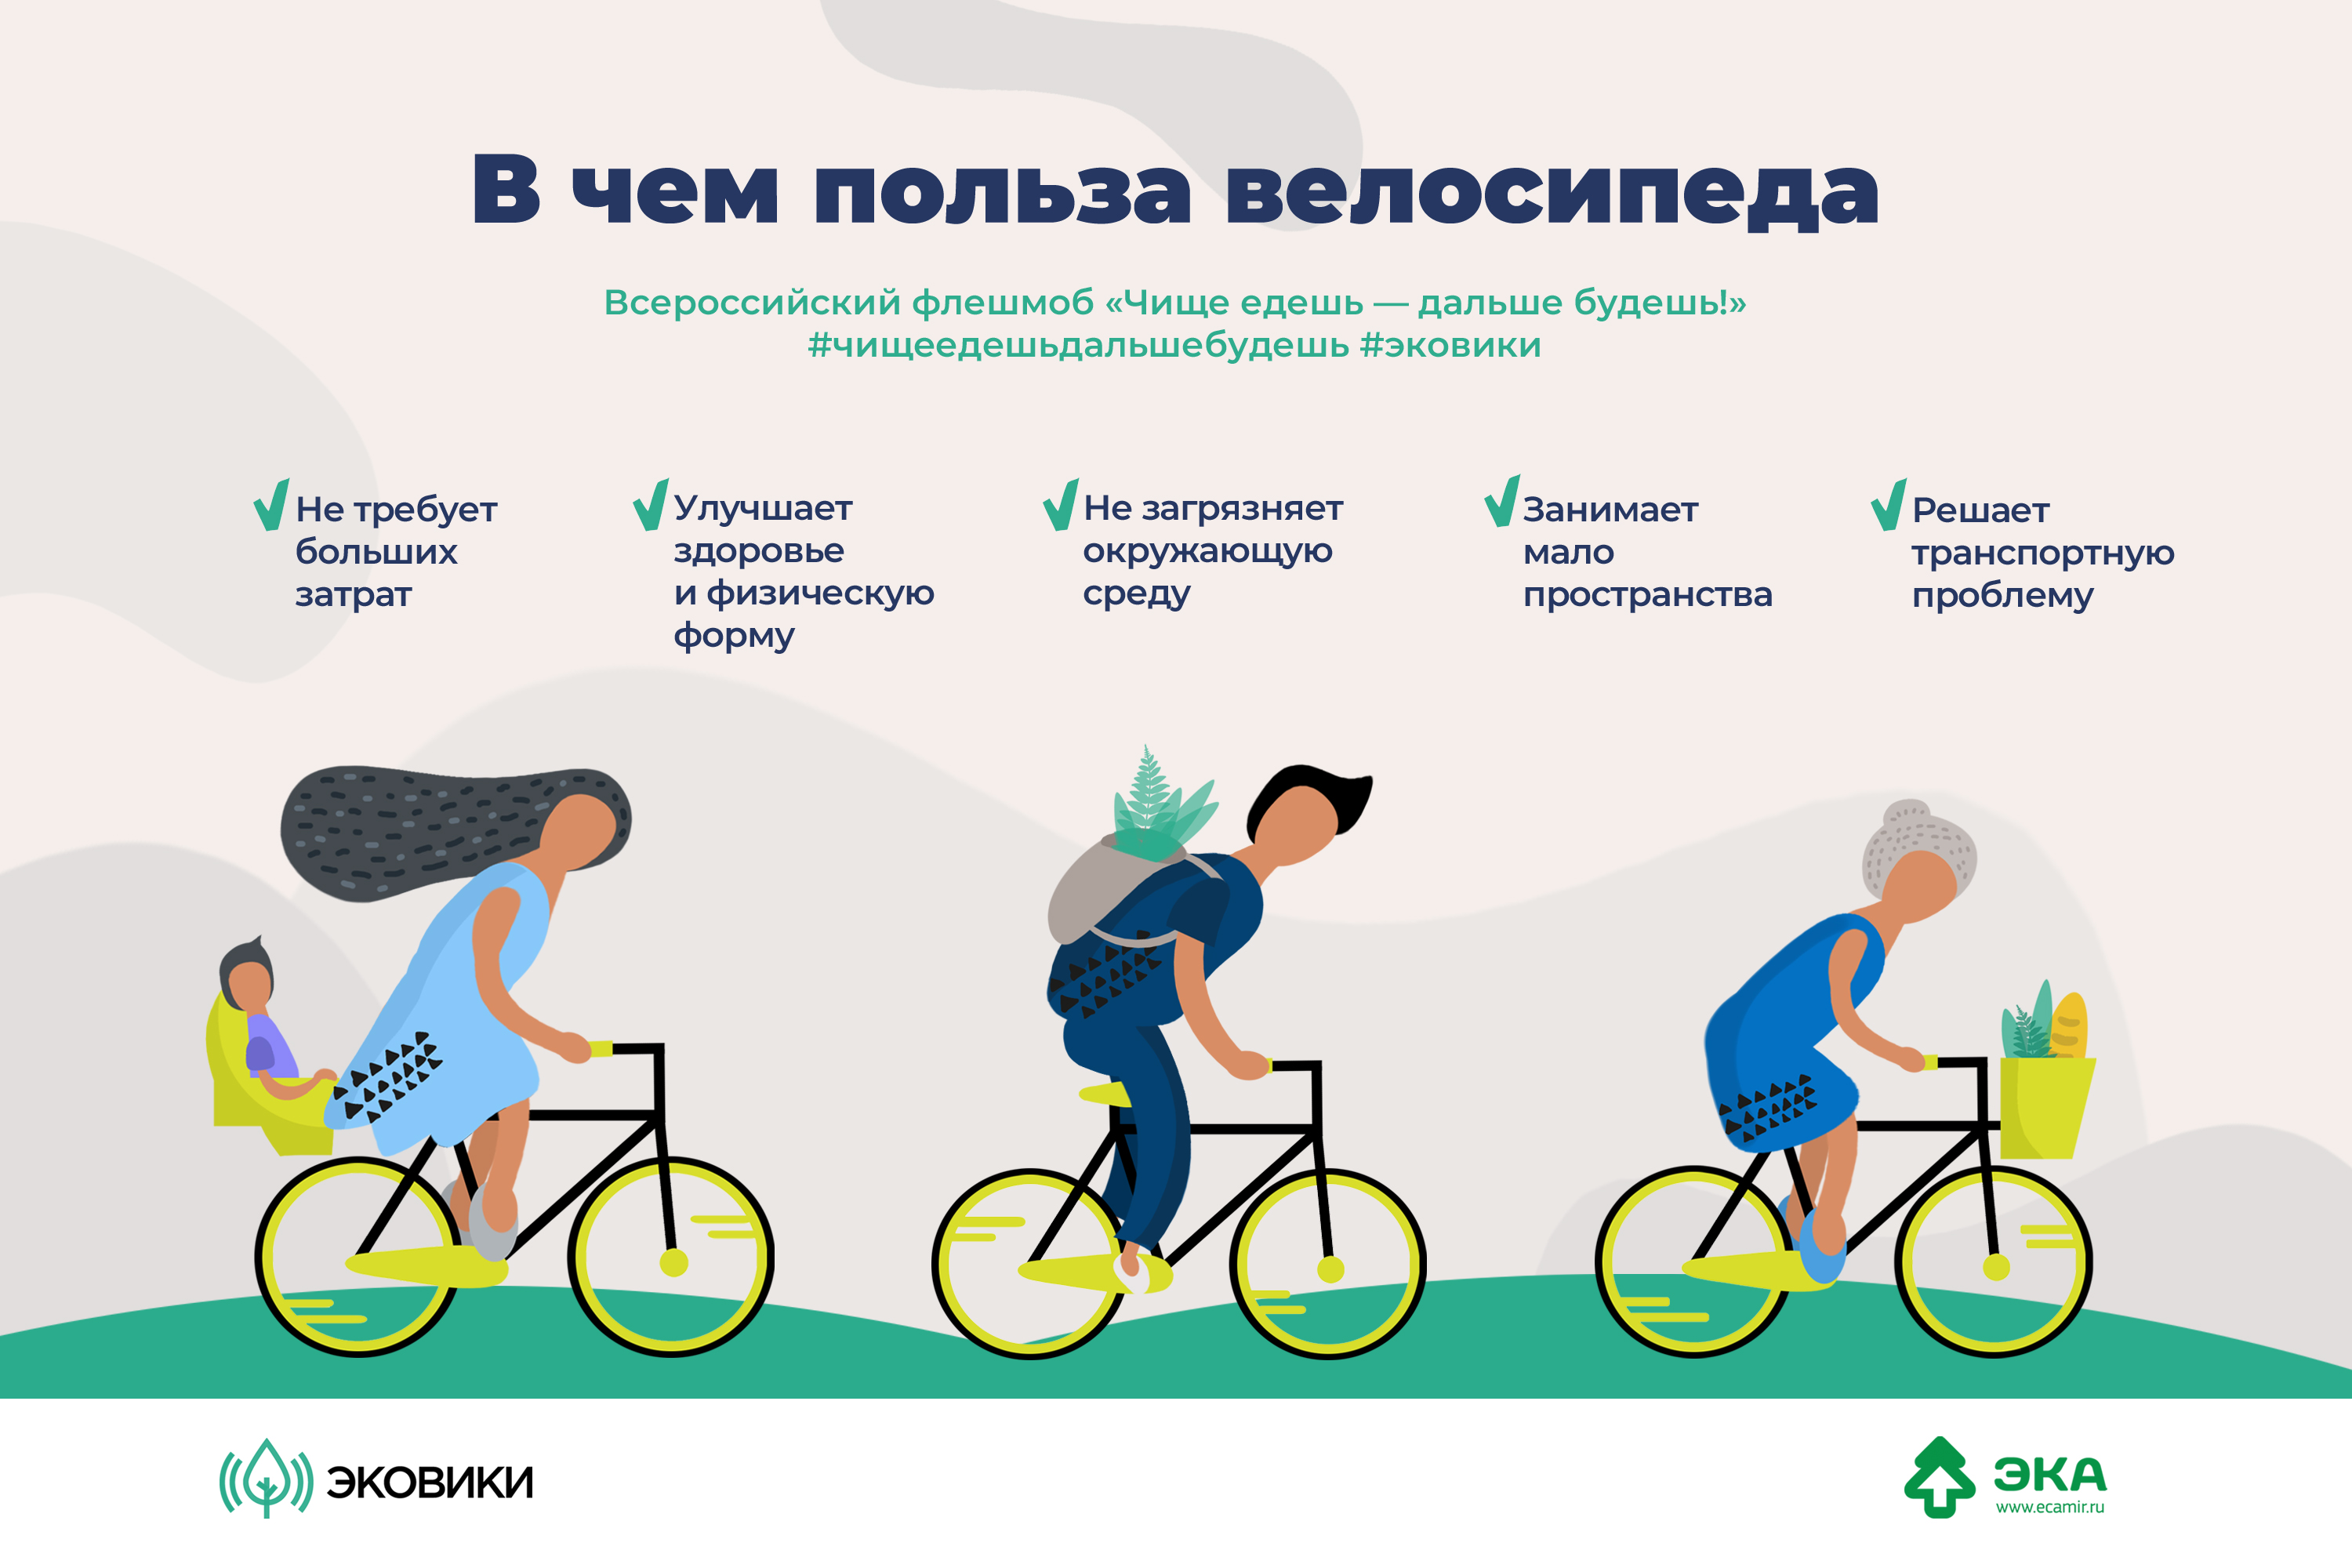 У каждого велосипеда по 2 колеса. Польза велосипеда. Езда на велосипеде польза. Велосипед и здоровье. Велосипед полезно для здоровья.